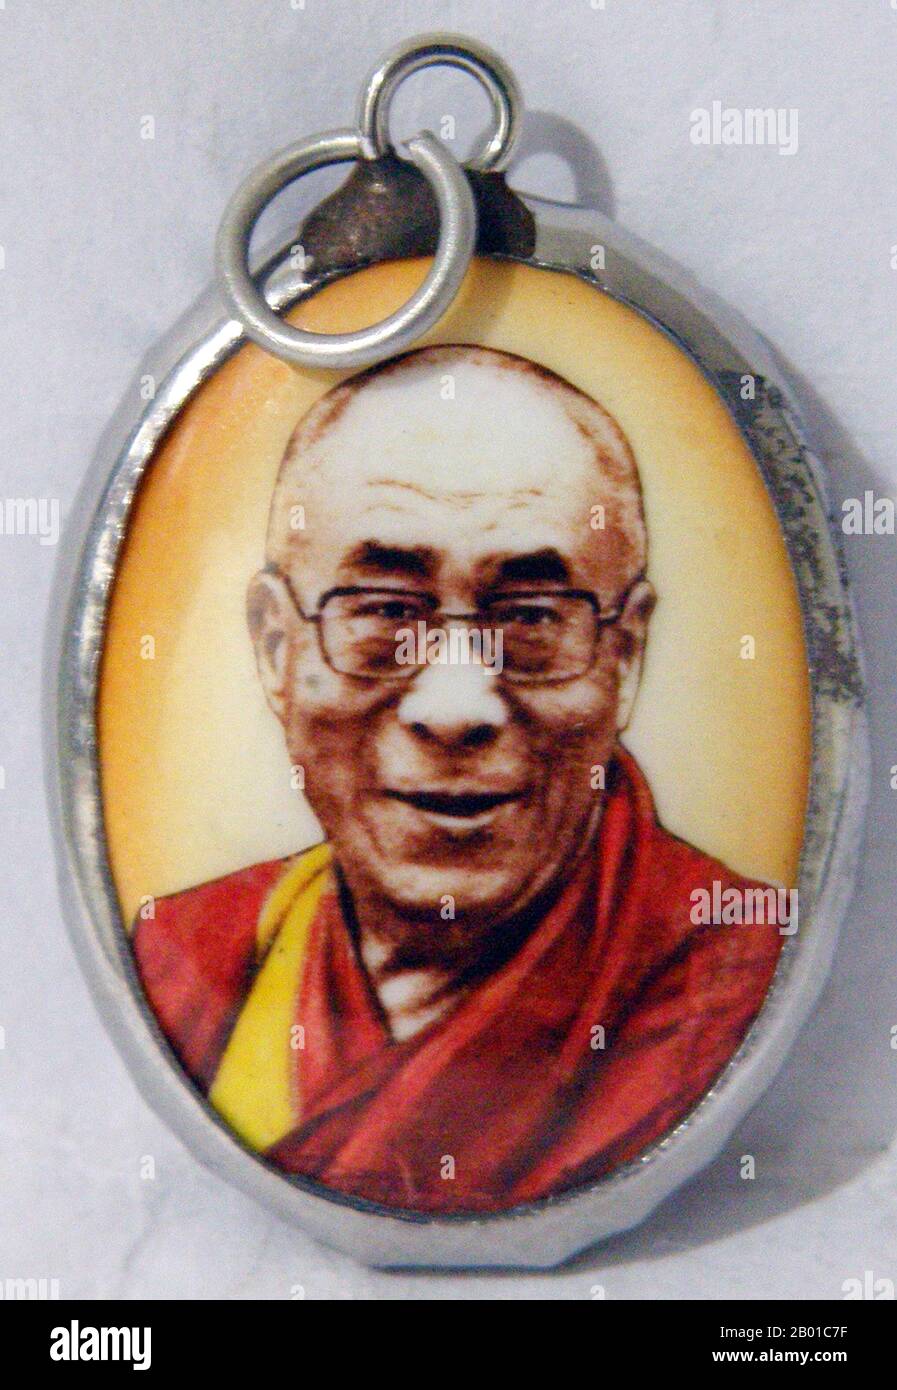 Tibet/China/Indien: Tibetisch-buddhistisches Amulett des Dalai Lama 14., Tenzin Gyatso (6. Juli 1935-). Der Dalai Lama 14. (religiöser Name: Tenzin Gyatso, abgekürzt von Jetsun Jamphel Ngawang Lobsang Yeshe Tenzin Gyatso, geboren Lhamo Dondrub) ist der 14. und aktuelle Dalai Lama. Dalai Lamas sind die einflussreichste Figur in der Gelugpa-Linie des tibetischen Buddhismus, obwohl die 14. in den letzten Jahren die Kontrolle über die anderen Linien konsolidiert haben. Er gewann 1989 den Friedensnobelpreis und ist auch bekannt für seine lebenslange Fürsprache für Tibeter innerhalb und außerhalb Tibets. Stockfoto